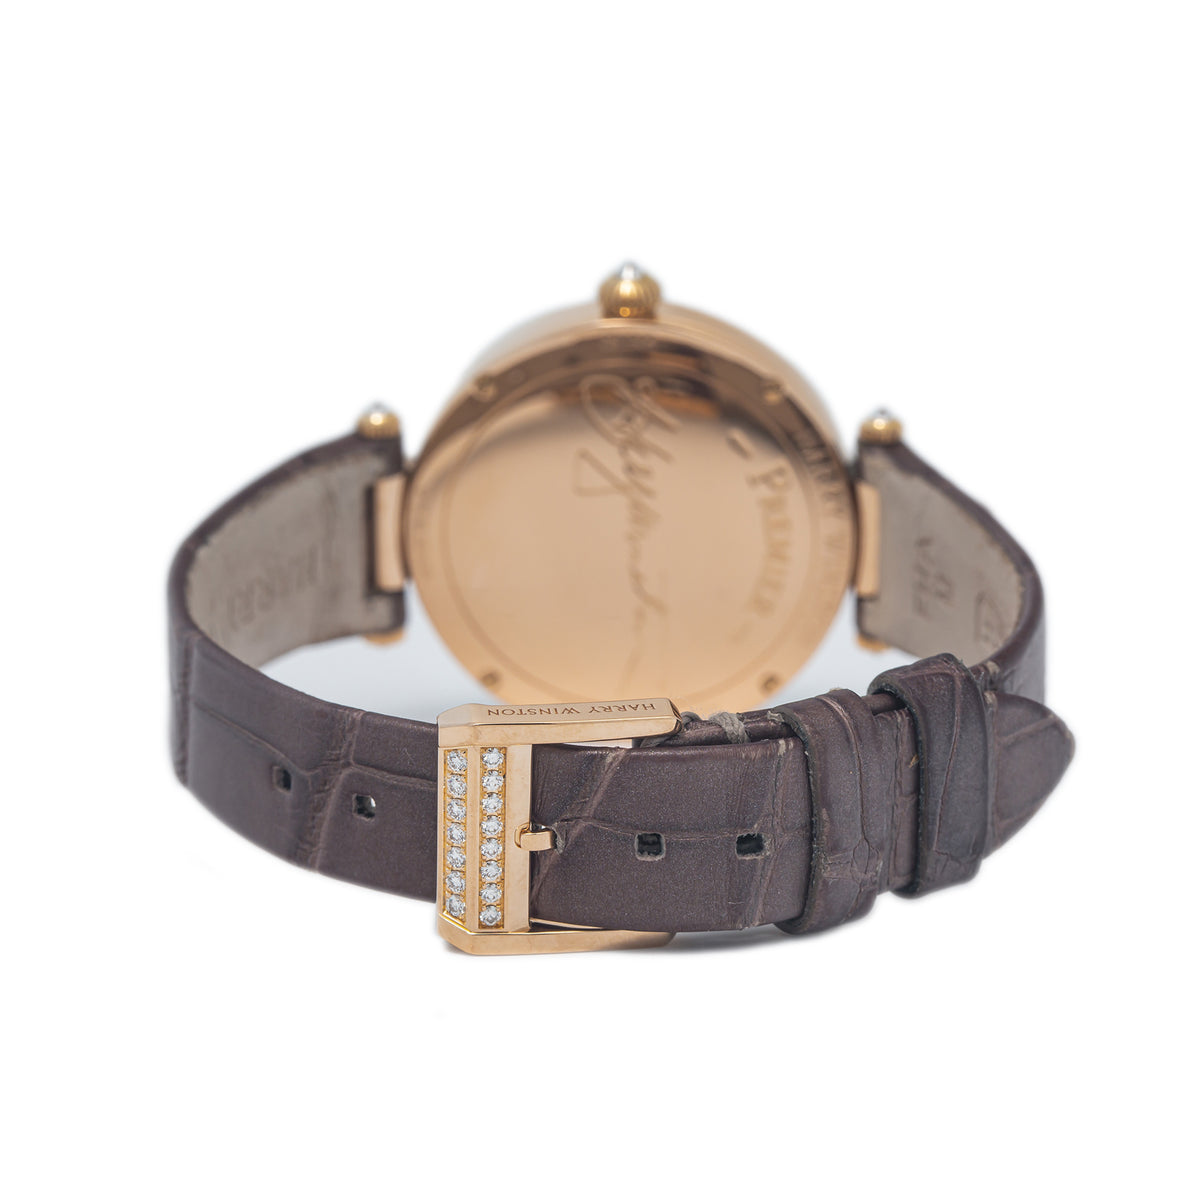 Harry Winston Premier PRNQHM31RR003 18k Rose Gold MOP Dial Quartz Watch 31mm